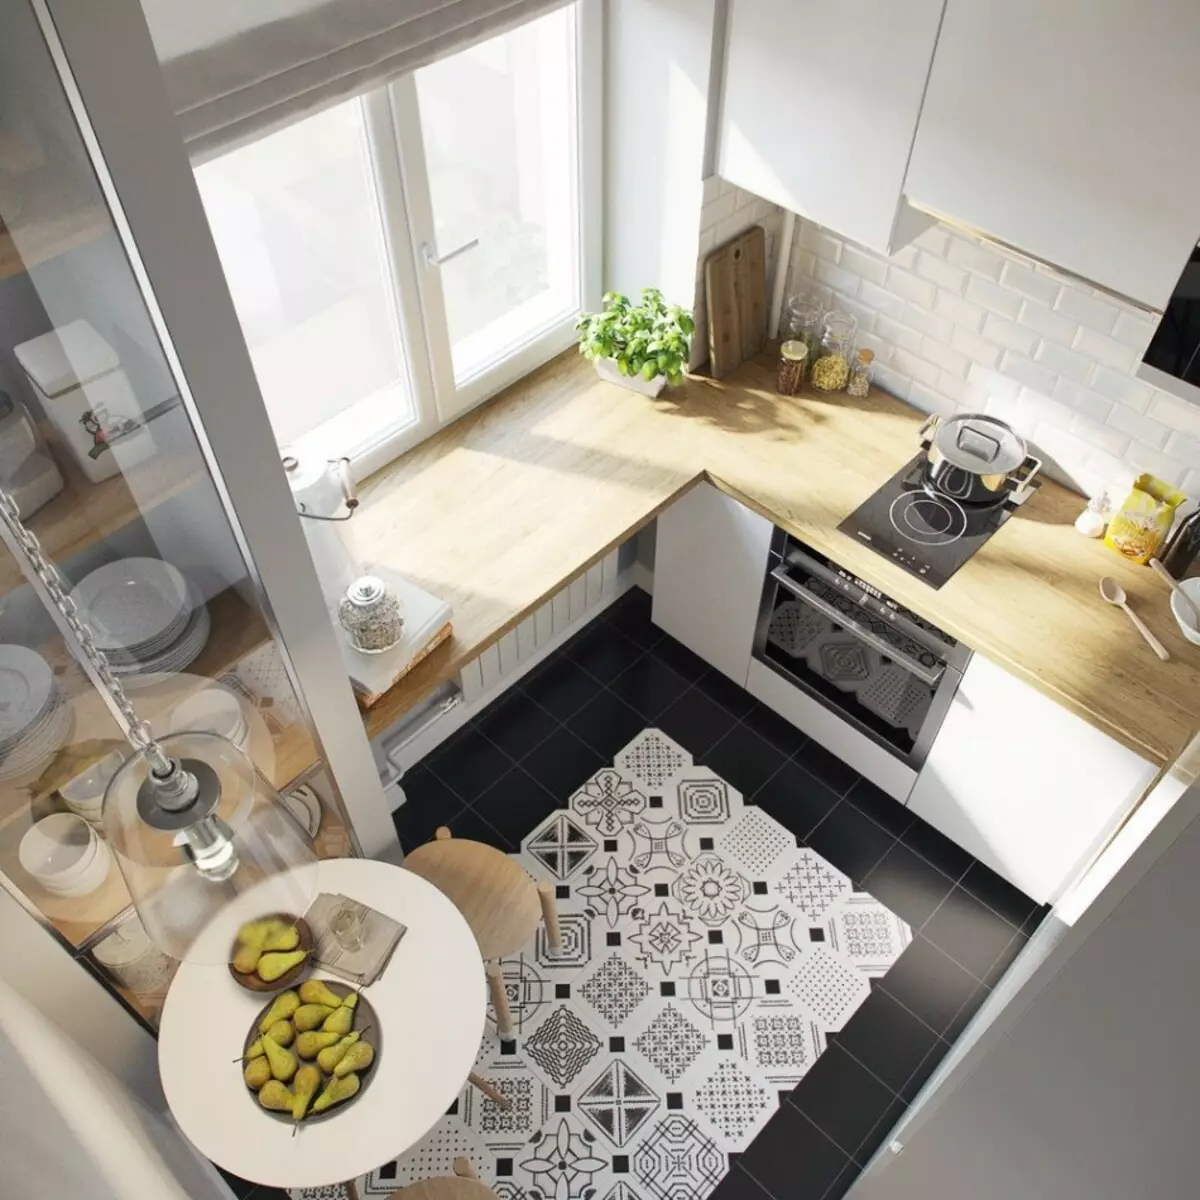 طراحی آشپزخانه 5 مربع. متر (100 عکس): تعمیر در آشپزخانه 5 متر مربع، مجموعه آشپزخانه و دیگر مبلمان، ایده های برنامه ریزی برای آشپزخانه کوچک 9454_5